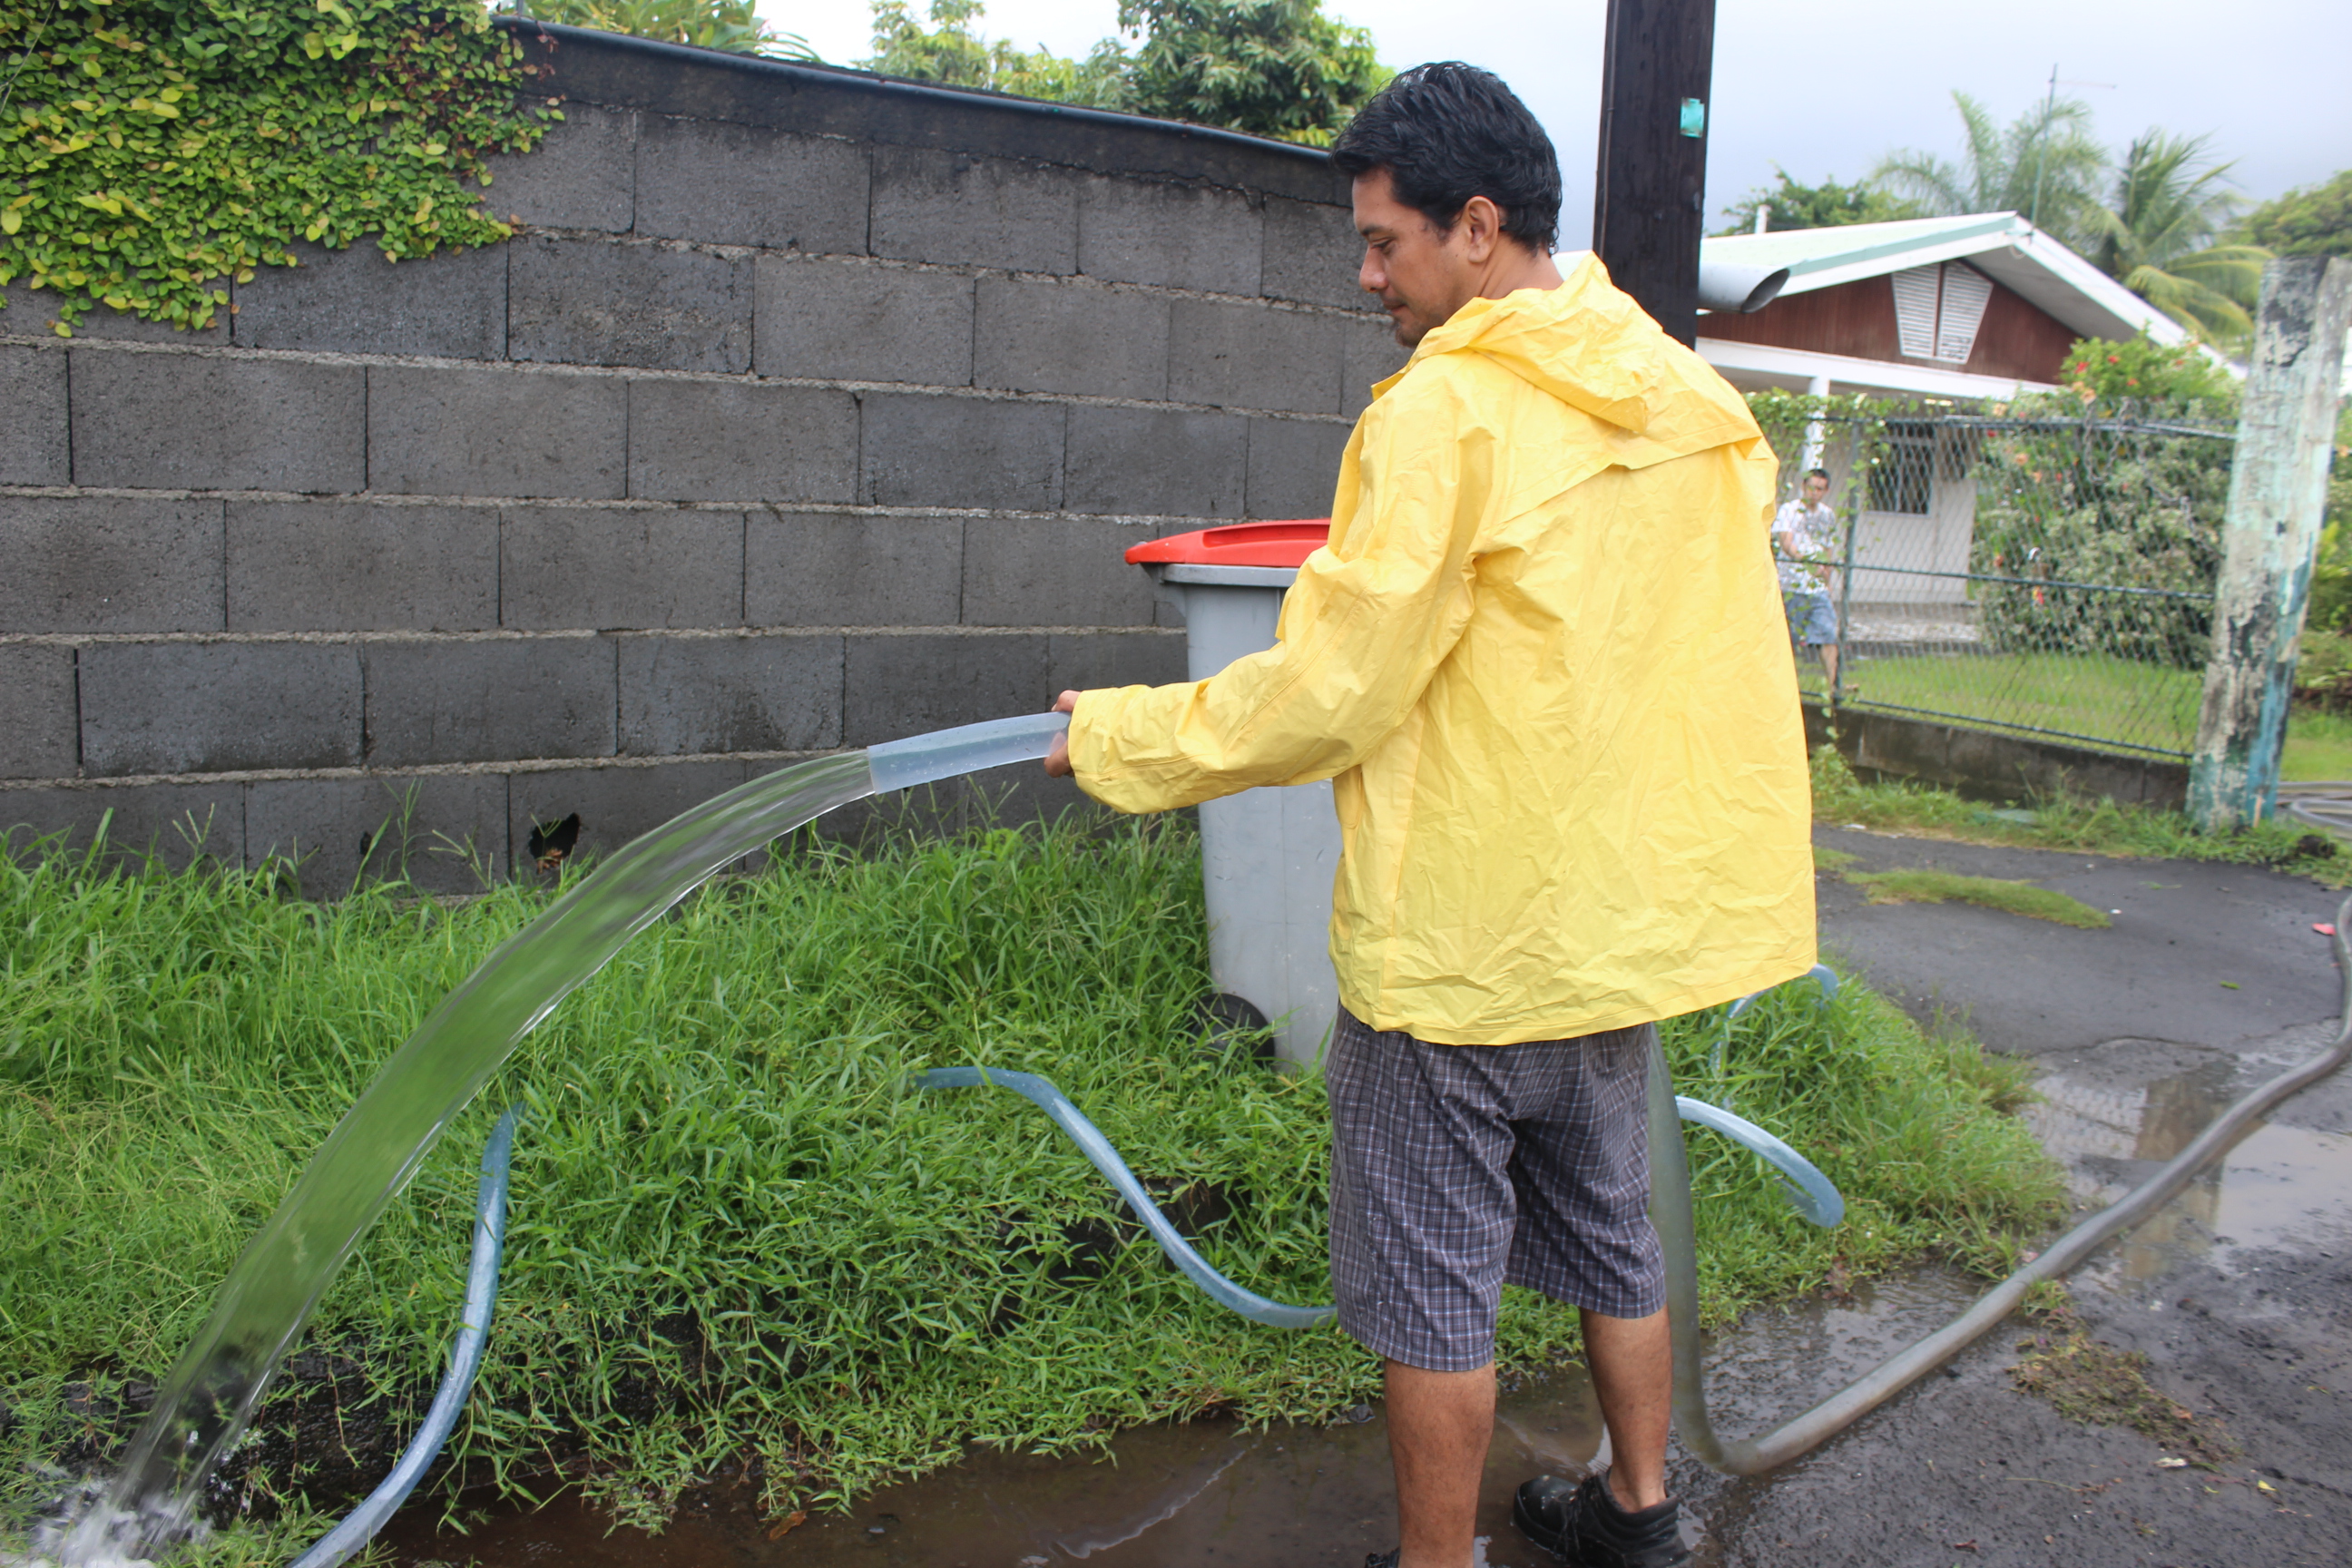 Les habitants du quartier de Taunoa avaient sorti les pompes pour évacuer l'eau de leur maison et jardin.